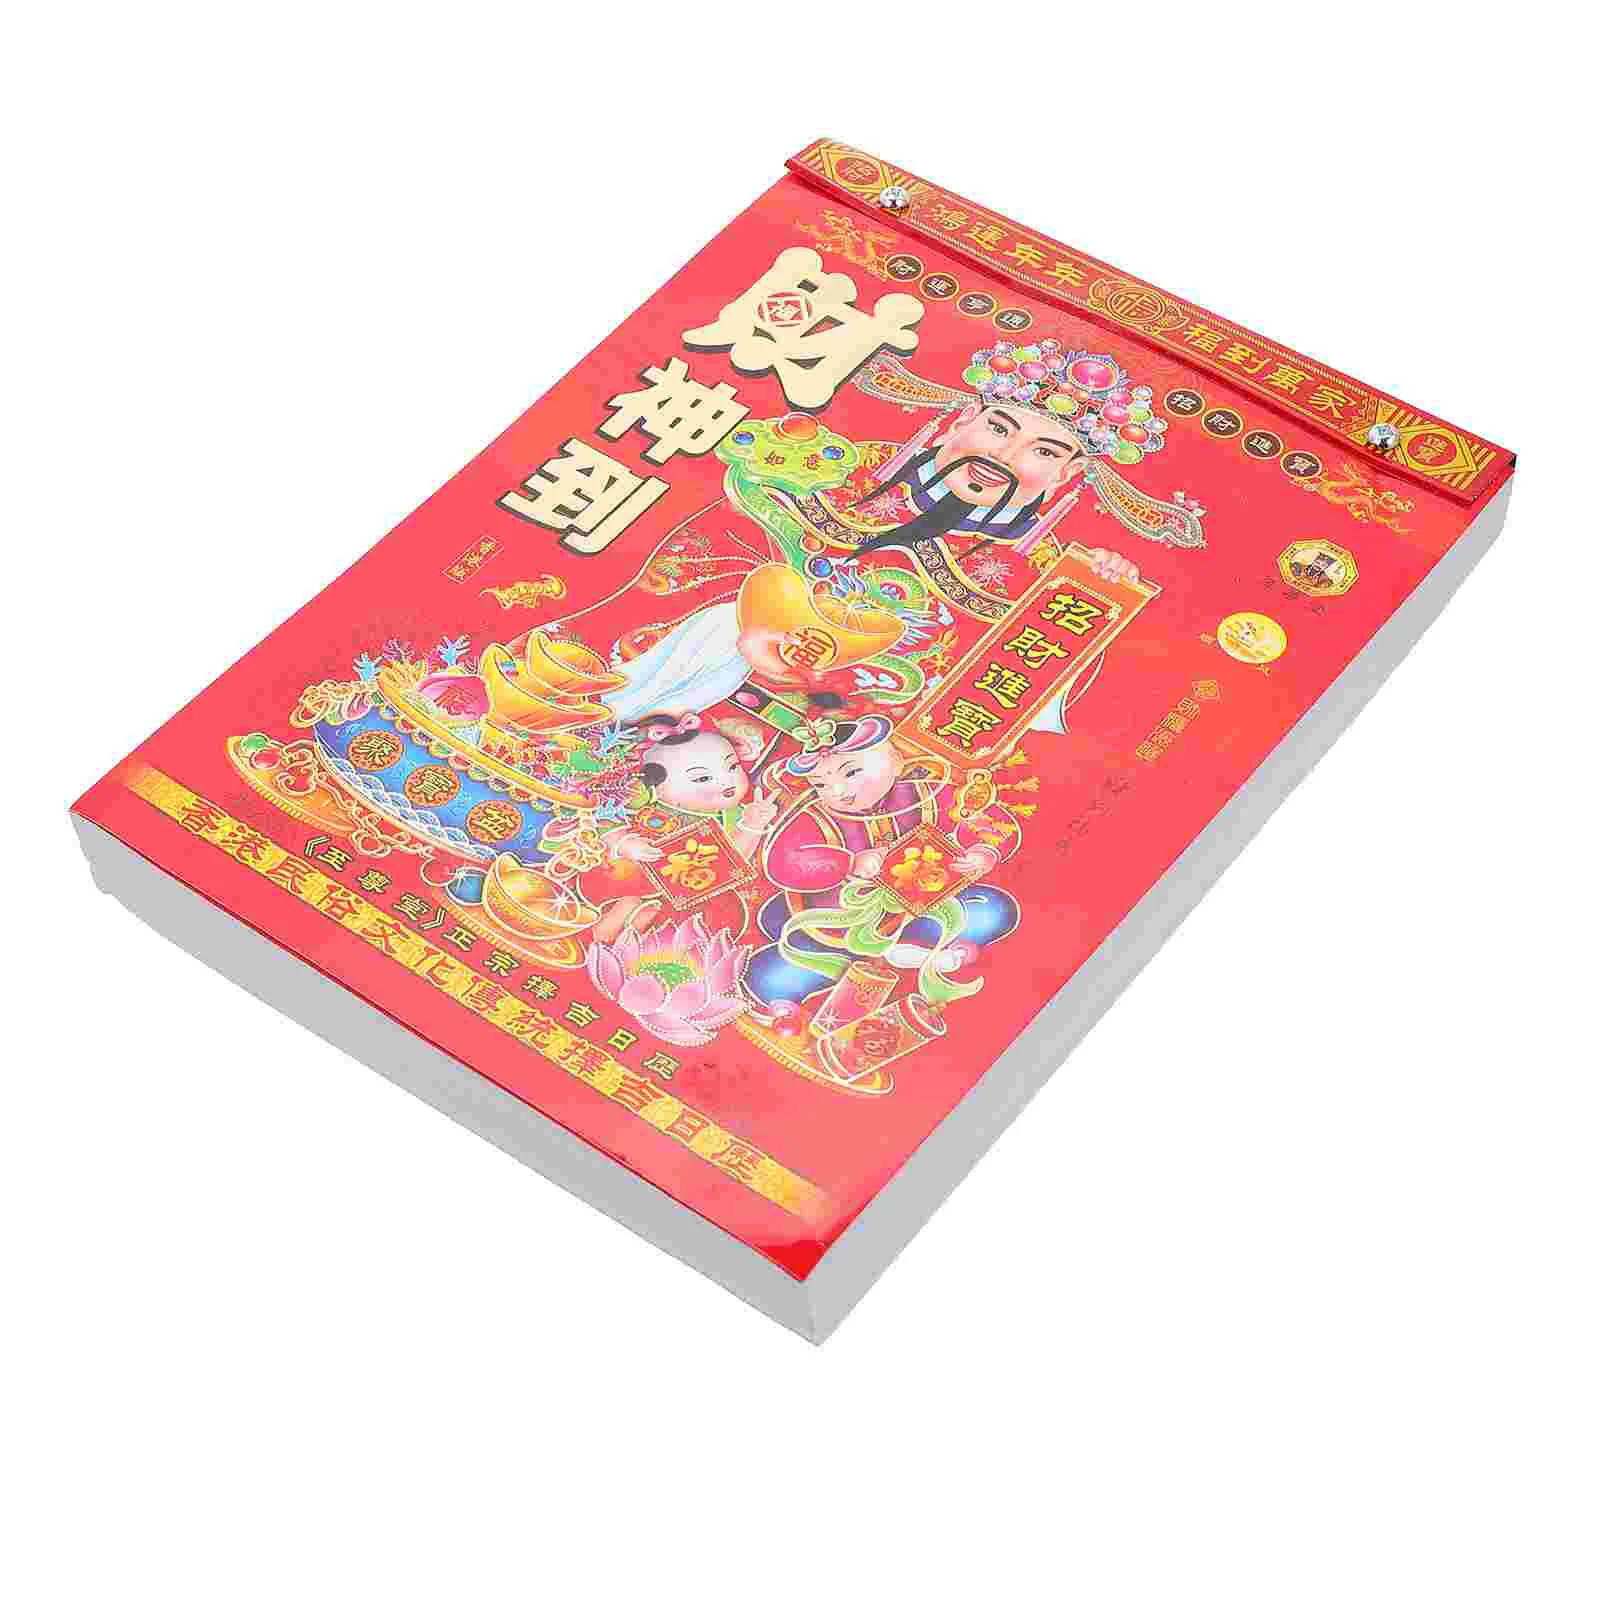 Китайский традиционный календарь Год кролика, Бумажный календарь, поддающийся разрыву, Китайский календарь Год кролика1